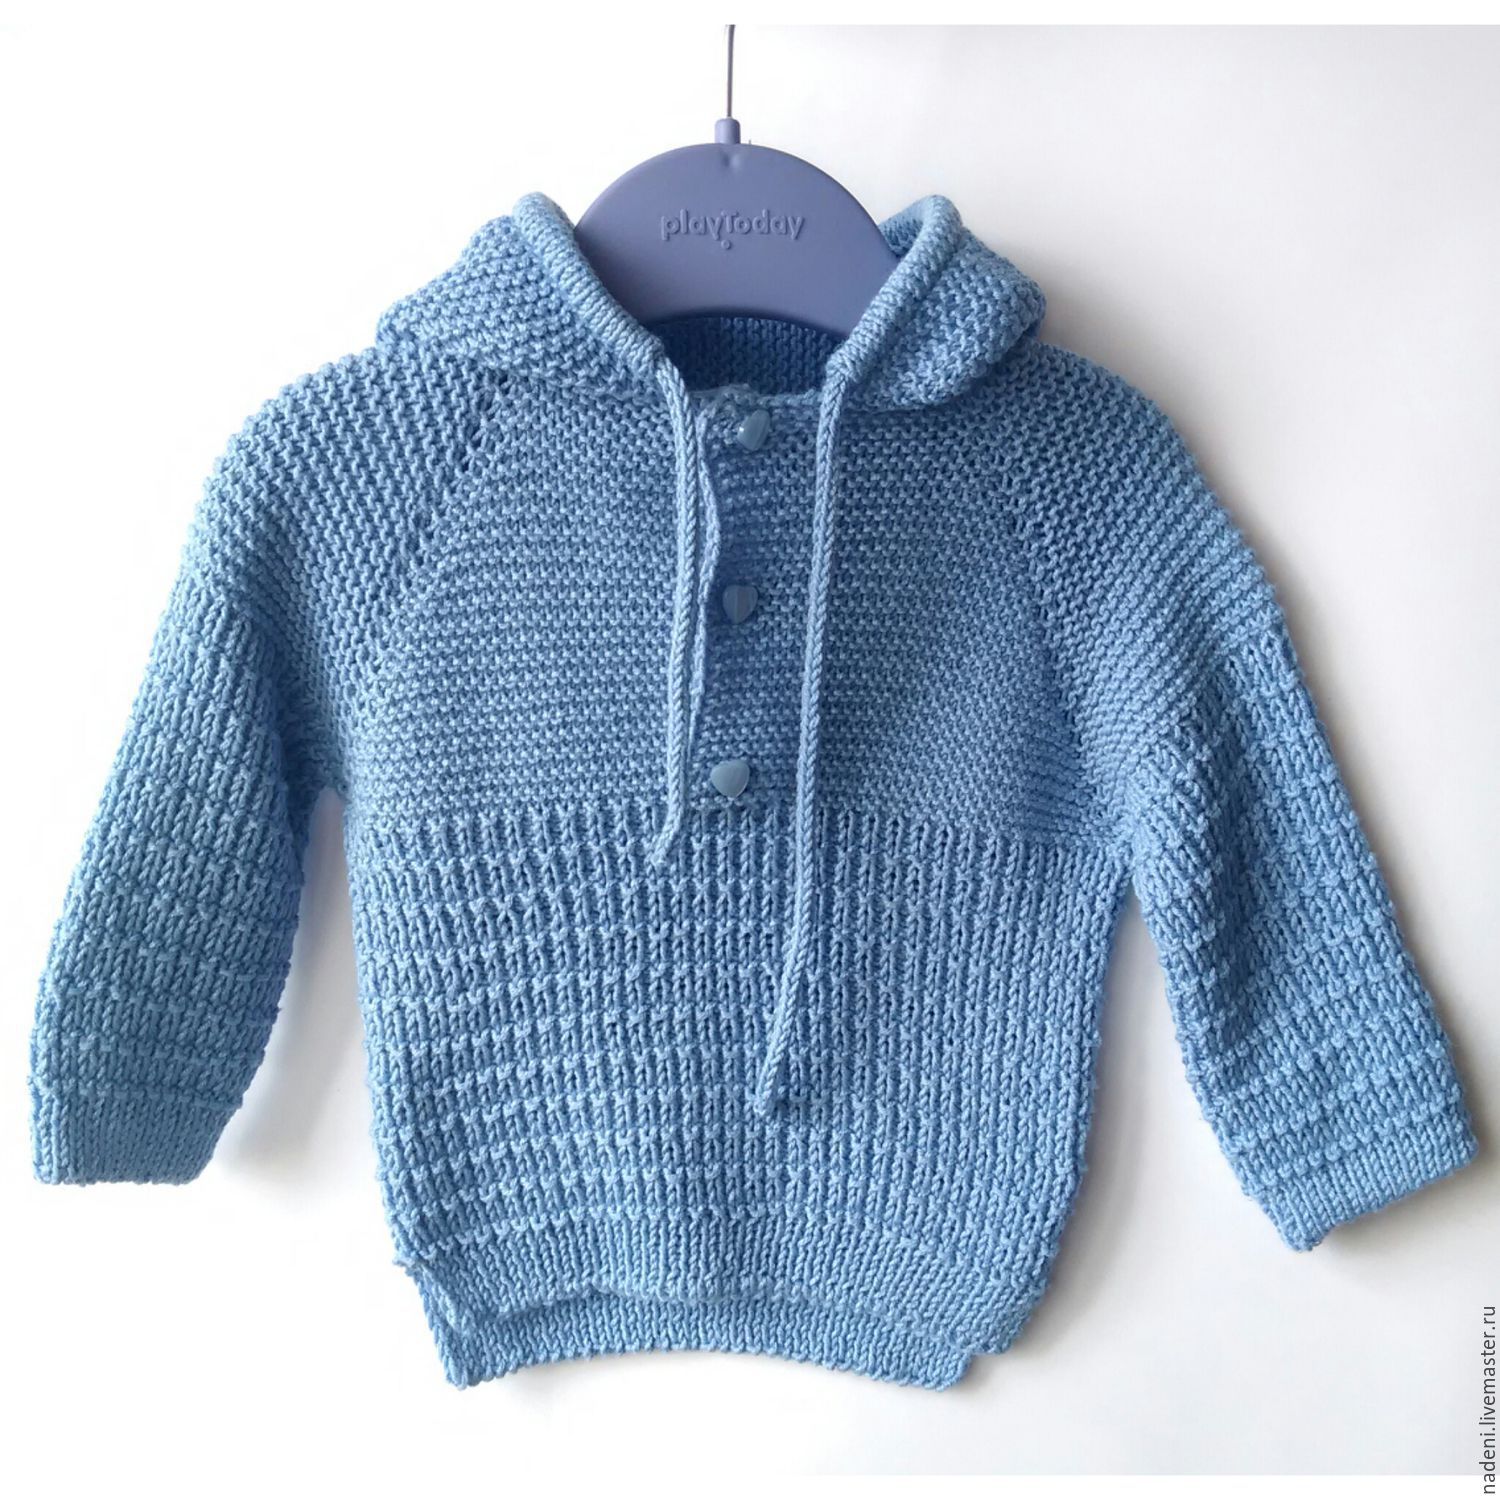 Кофта мальчик 3 года. Вязаный свитер для мальчика. Детская вязаная кофта для мальчика. Вязаный джемпер для малыша. Вязаный джемпер для мальчика.